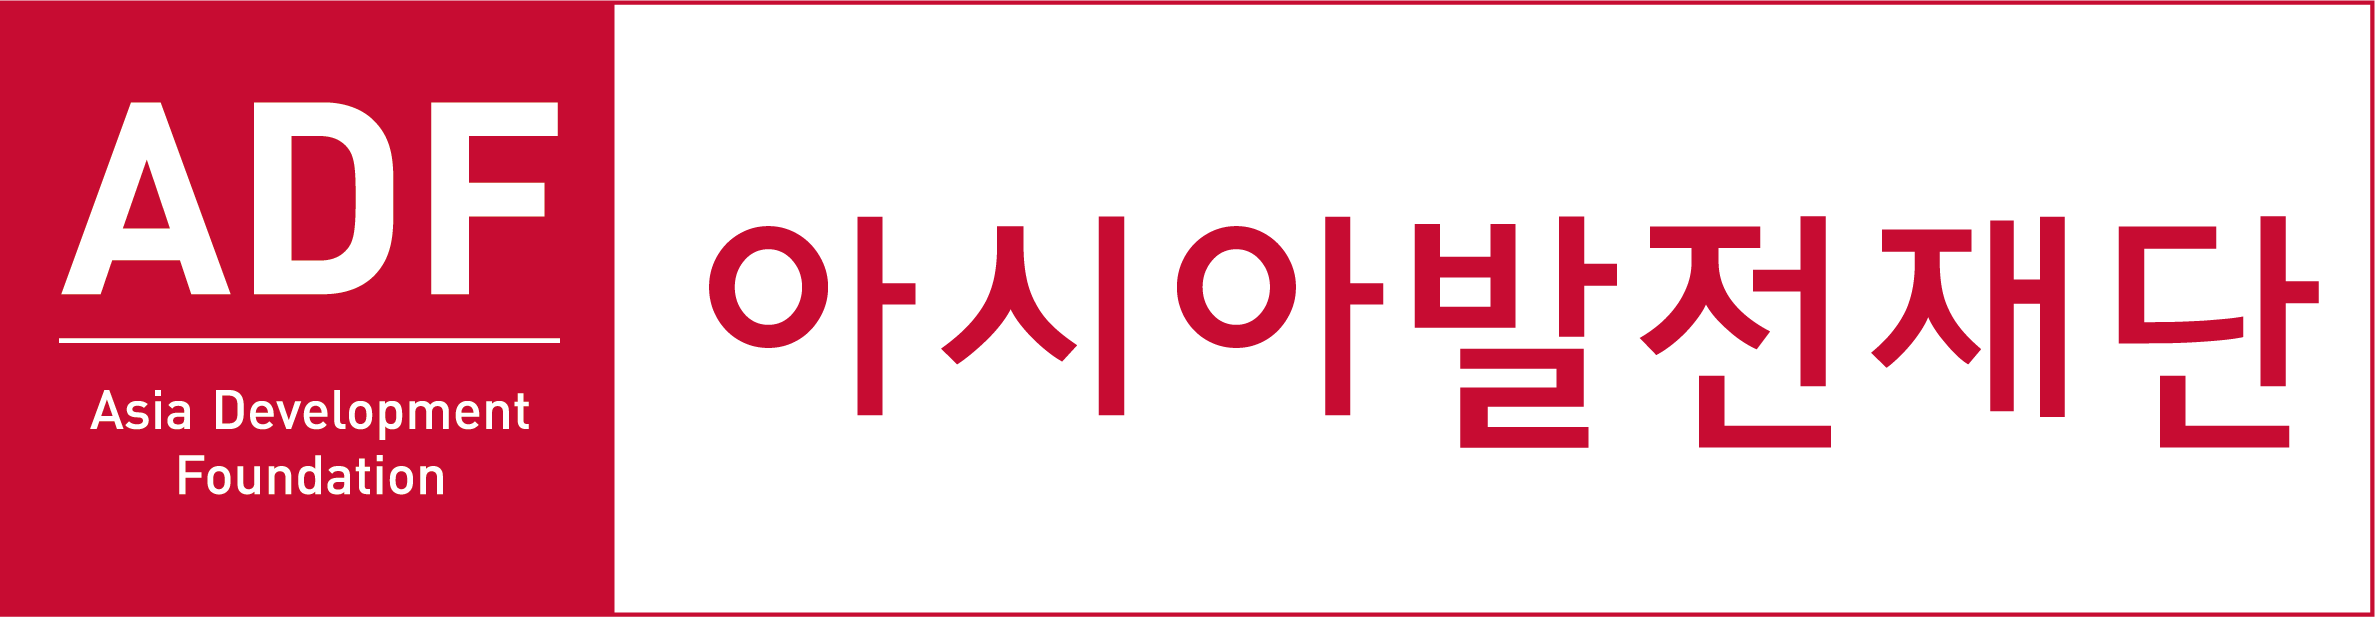 아시아발전재단 로고 가로형.png